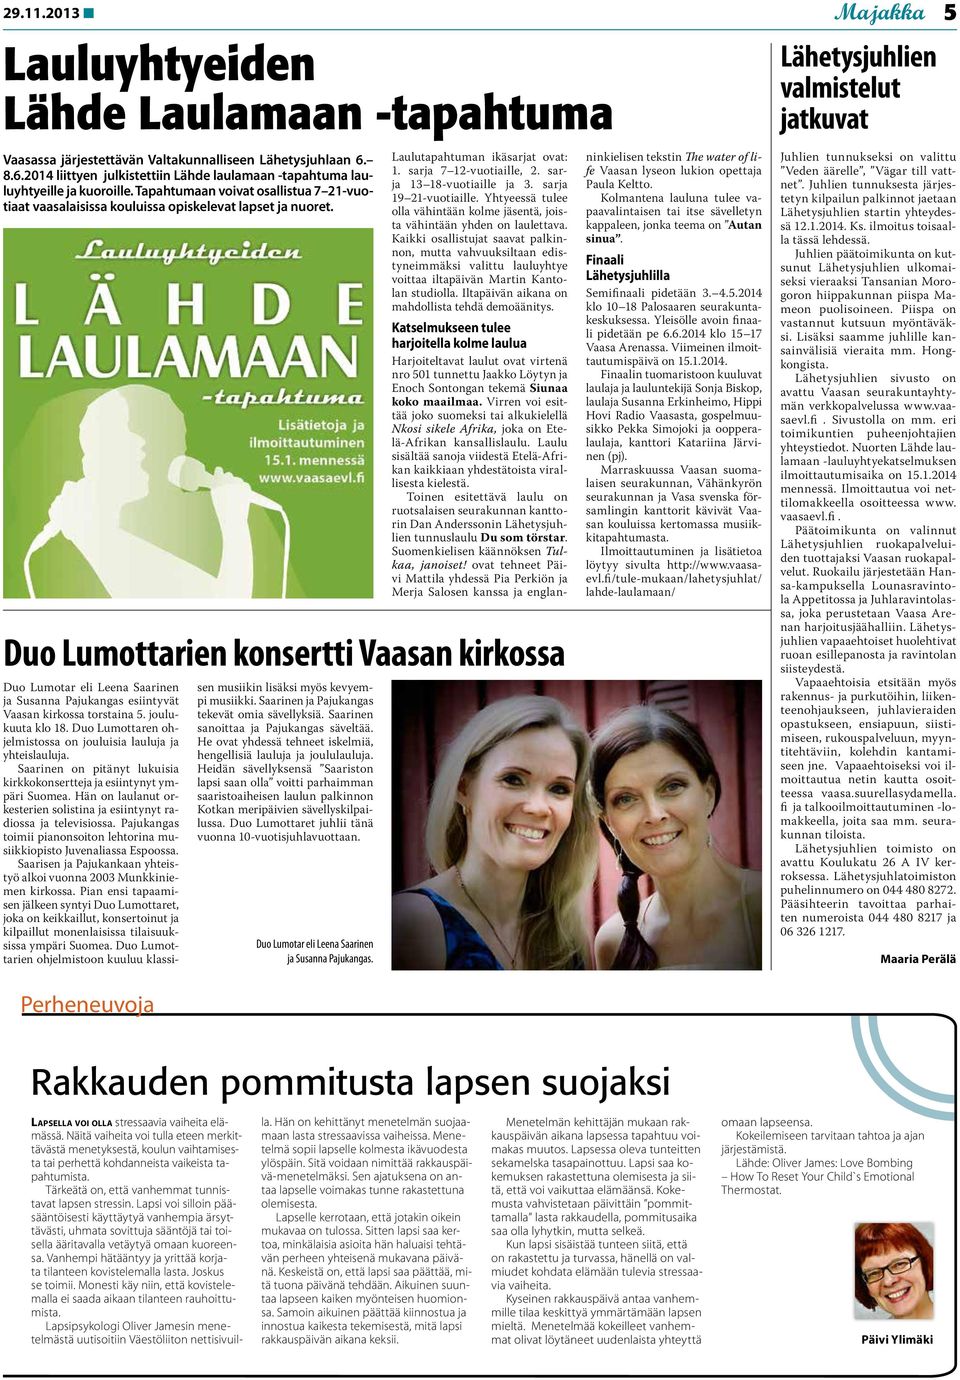 Perheneuvoja Duo Lumottarien konsertti Vaasan kirkossa Duo Lumotar eli Leena Saarinen ja Susanna Pajukangas esiintyvät Vaasan kirkossa torstaina 5. joulukuuta klo 18.